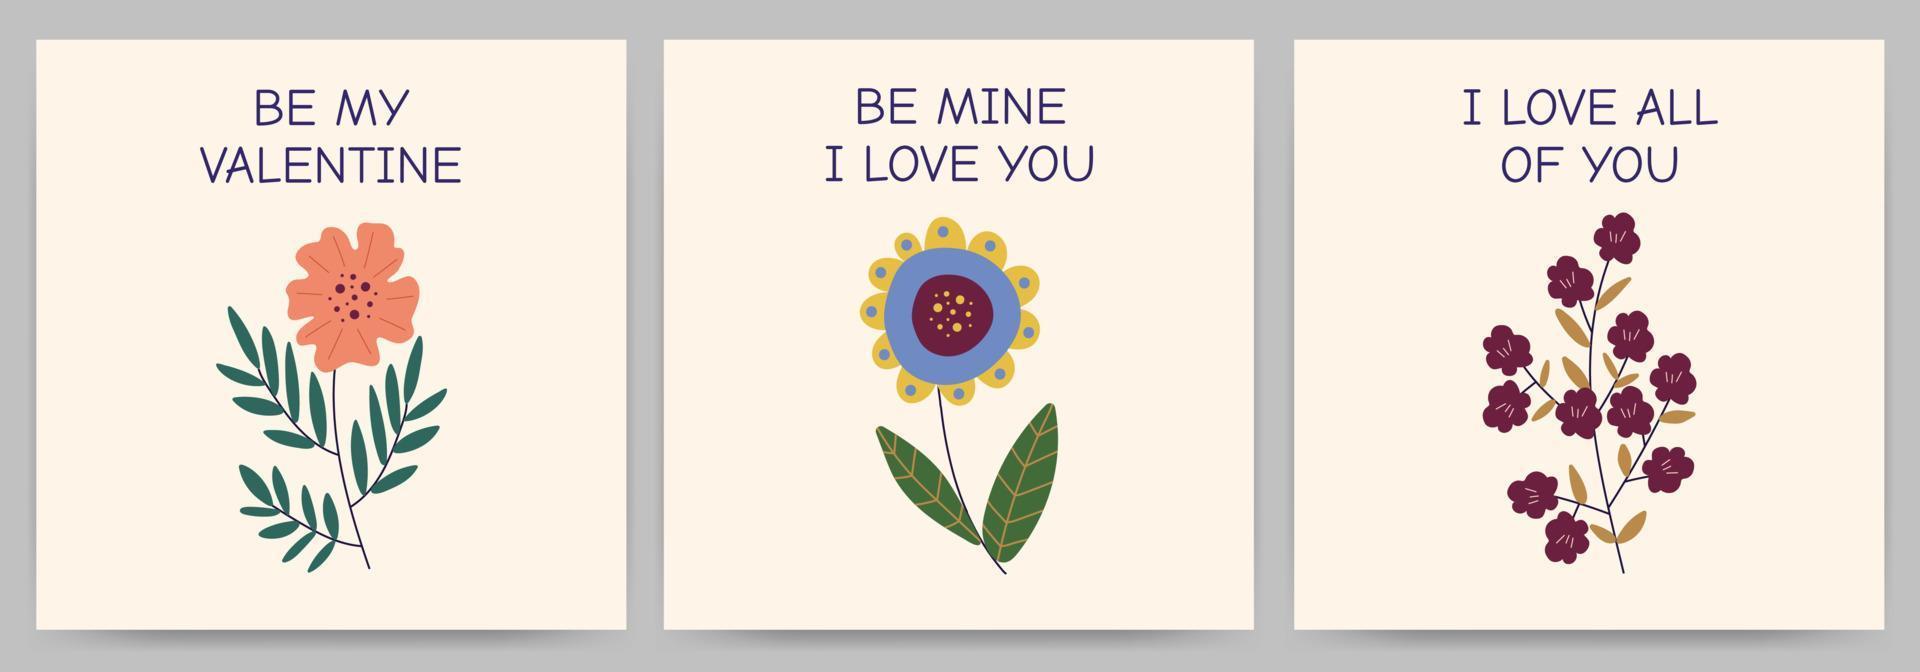 conjunto de cartões feliz dia dos namorados, convites, declaração de amor. modelos quadrados com flores e texto. ilustração vetorial em um fundo claro. vetor